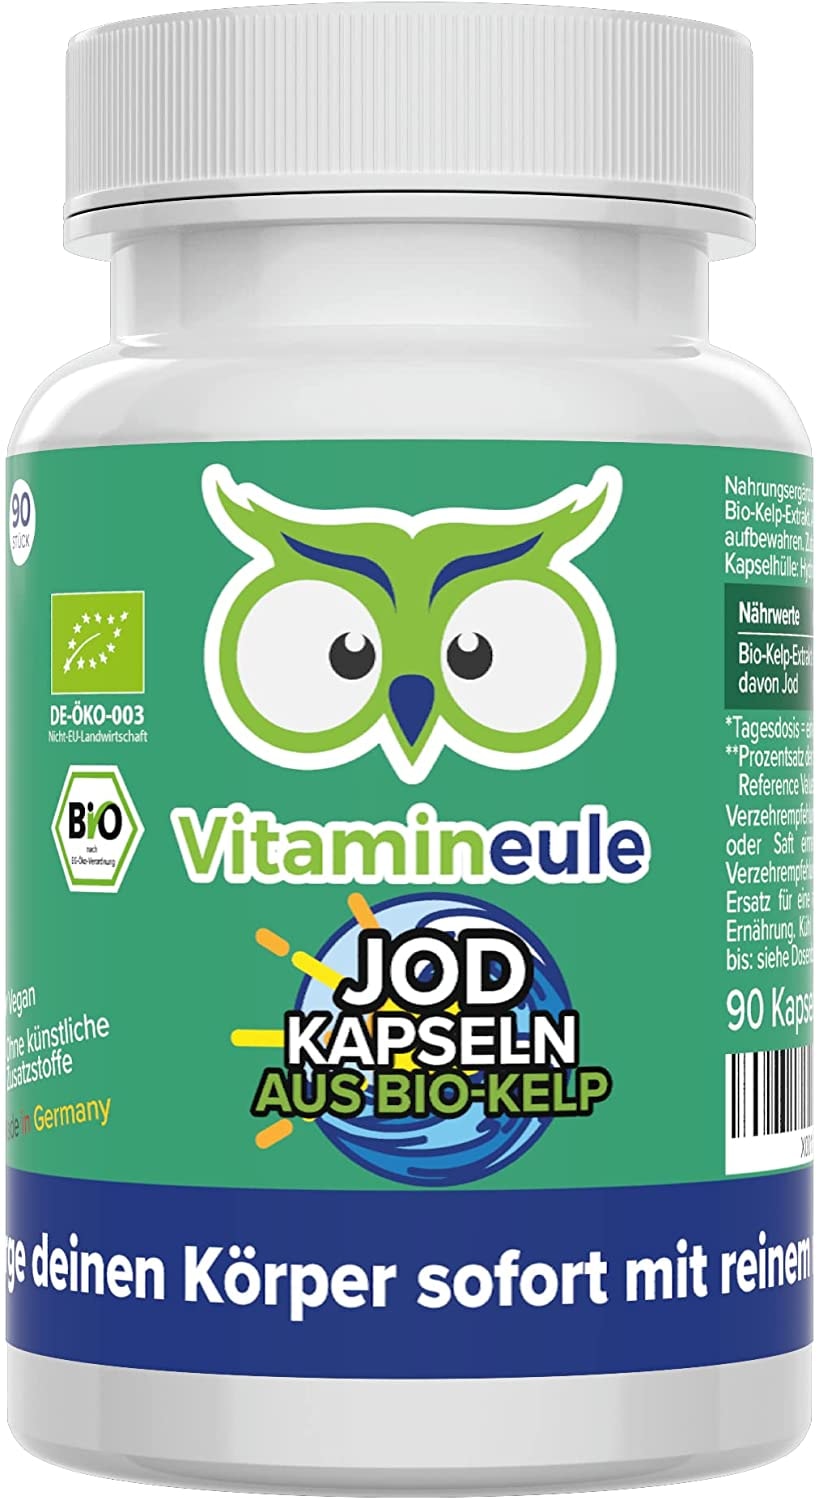 Vitamineule® - Jod Kapseln aus Bio Kelp - hochdosiert mit 400µg - natürliches Jod aus Bio Kelp Algen Extrakt - ohne künstliche Zusatzstoffe - Qualität aus Deutschland - vegan -